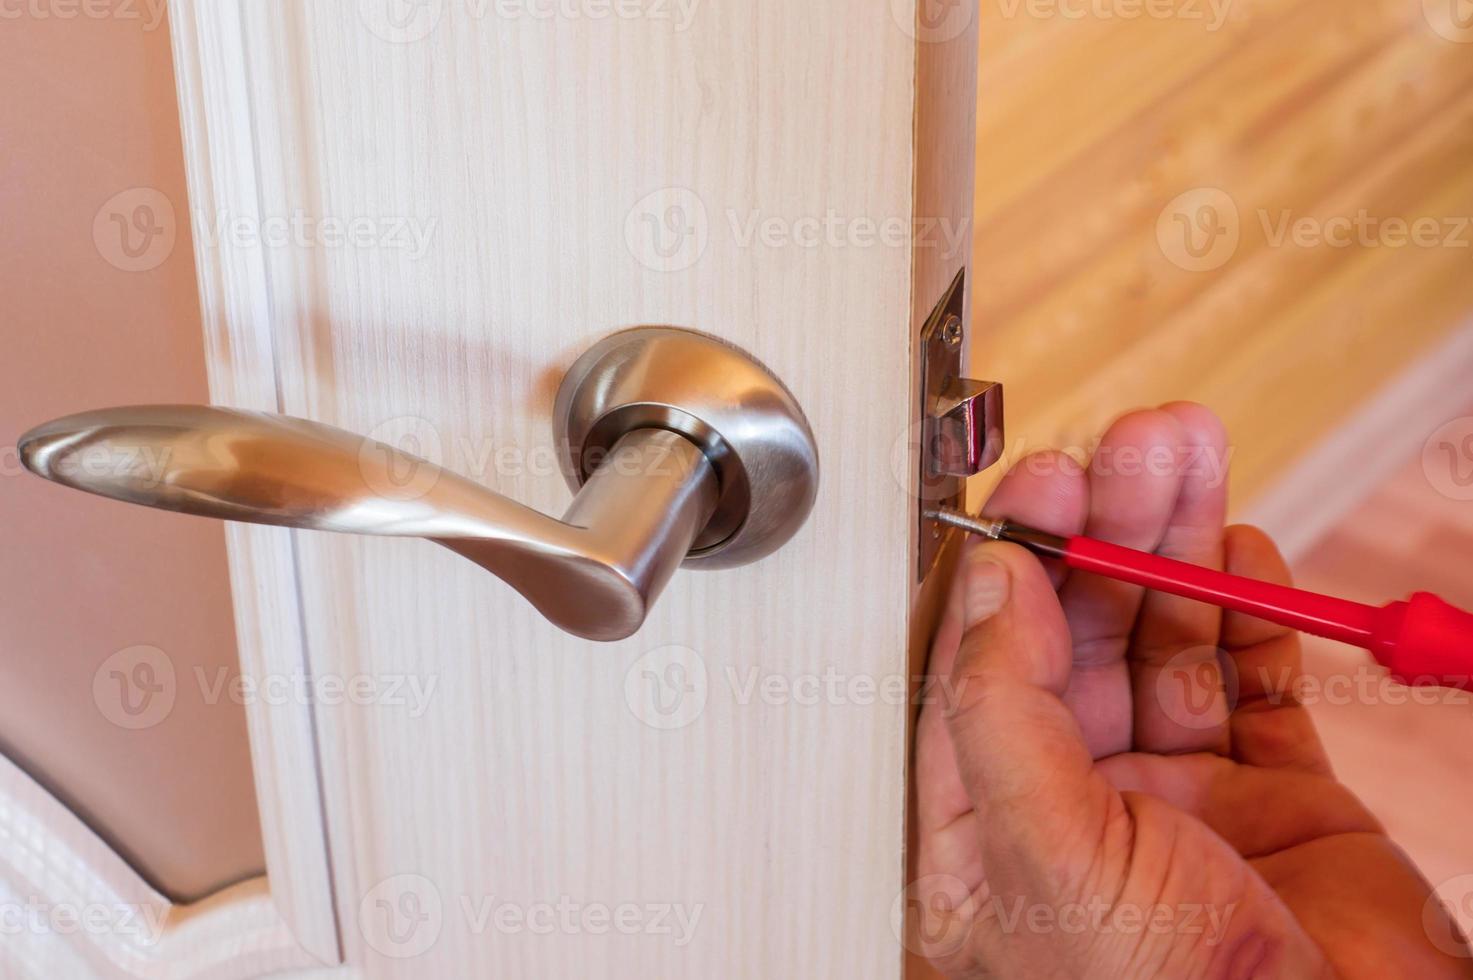 homme à tout faire répare la serrure de la porte dans la chambre, homme fixant la serrure avec un tournevis, gros plan sur la réparation de la porte, serrurier professionnel installant photo